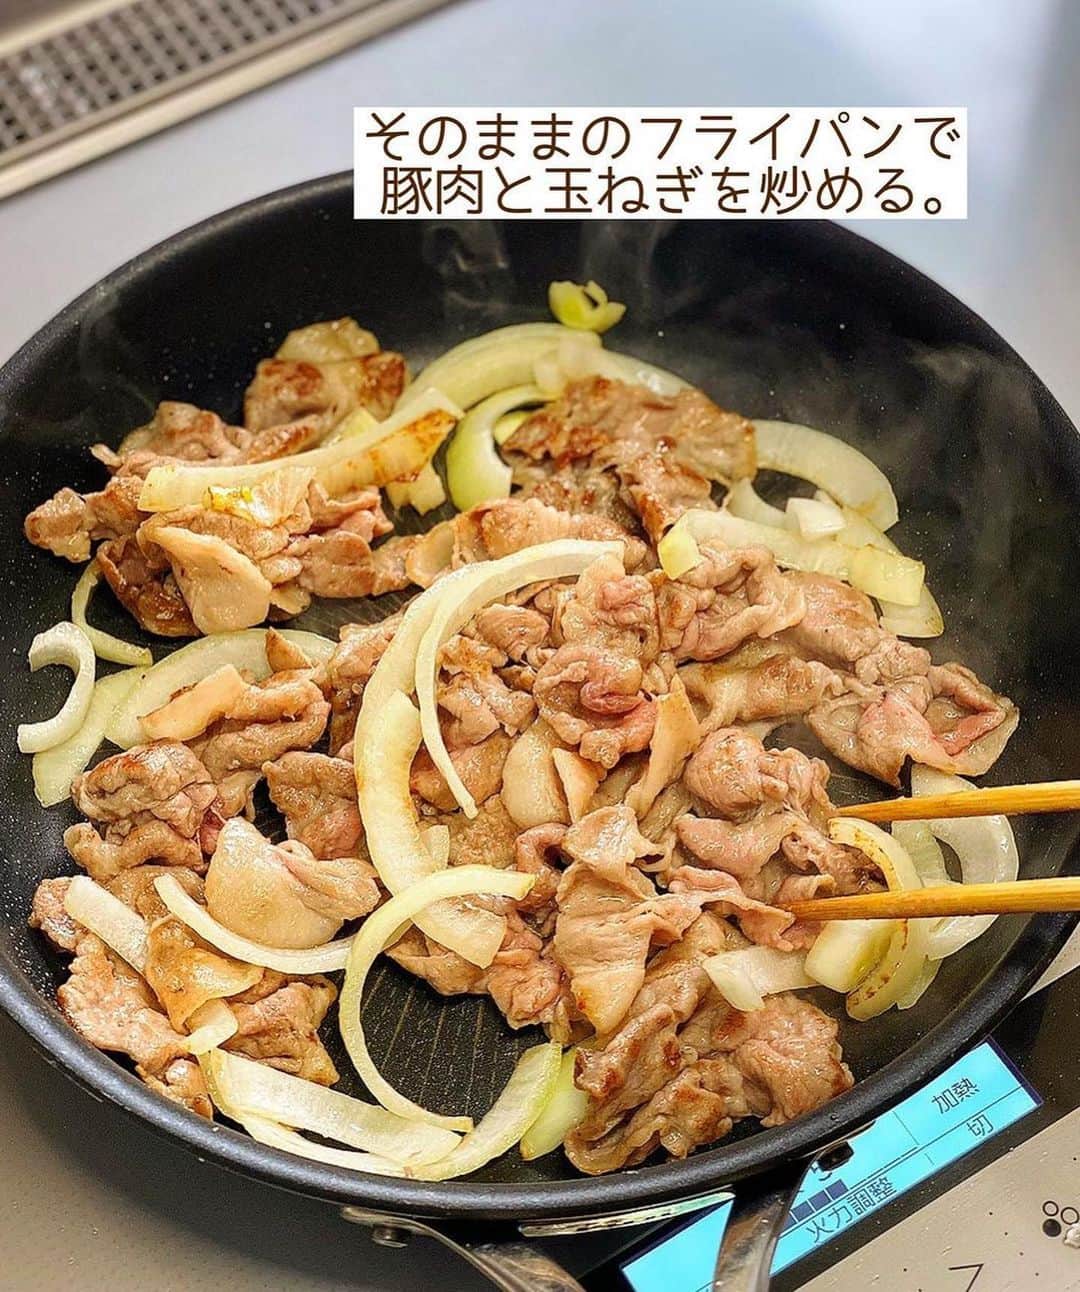 Mizuki【料理ブロガー・簡単レシピ】さんのインスタグラム写真 - (Mizuki【料理ブロガー・簡単レシピ】Instagram)「・ボリューム満点💕 ⁡ ［#レシピ ］ ーーーーーーーーーーー ごはんがすすむ！ 豚肉となすの生姜焼き ーーーーーーーーーーー ⁡ ⁡ ⁡ おはようございます☺️ ⁡ 今日ご紹介させていただくのは \ 豚肉となすの生姜焼き / (再掲載🍆) ⁡ いつもの生姜焼きに なすを加えてボリュームアップ☝️ しっかり味の甘辛だれで がっつりごはんがすすみます💕 ⁡ お肉は生姜焼き用ではなく ''薄切り肉''でさっと火を通すと やわらかく仕上がりますよ〜✨ よかったらお試し下さいね😋 ⁡ ＊豚薄切り肉は、肩ロース、バラ こま、などなんでもOK♩ (おすすめは肩ロースです✨) ⁡ ⁡ ⁡ 💬💬💬 謎の暮らしアカウント作りました🏠 変なライブはこっちでやってます🤫 →(@mizuki_kurashi ) ⁡ ⁡ 【簡単・時短・節約レシピ更新中🔻】 @mizuki_31cafe ⁡ ⁡ ⁡ ＿＿＿＿＿＿＿＿＿＿＿＿＿＿＿＿＿＿＿ 【2人分】 豚薄切り肉...200g 薄力粉...適量 なす...2本 玉ねぎ...1/2個 サラダ油...大2 ●醤油・酒...各大2 ●砂糖・みりん...各大1 ●生姜チューブ...3cm ⁡ 1.なすは縦8mm幅に切り、水に3分晒して水気を拭く。豚肉は適当に広げて薄く薄力粉をまぶす。玉ねぎは横1cm幅に切る。●は合わせておく。 2.フライパンにサラダ油を中火で熱し、なすを両面色よく焼いて取り出す。(＊ポイント参照) 3.そのままのフライパンで豚肉と玉ねぎを炒め、火が通ったら2と●を加えて煮からめる。 ￣￣￣￣￣￣￣￣￣￣￣￣￣￣￣￣￣￣￣ ⁡ ⁡ ⁡ 《ポイント》 ♦︎豚肉は薄切り肉ならなんでもOK！個人的に一押しは肩ロース薄切り肉(又は切り落とし肉)です♩やわらかく脂のバランスも最高！ ♦︎玉ねぎは横薄切りにするとしんなりしやすく、他の食材と馴染みます♩ ♦︎なすは油を吸いますが、じっくり焼いていると油が出てくるので、その油で豚肉と玉ねぎを炒めます♩(もし油が足りない場合は足してもOKです♩) ⁡ ⁡ ⁡ ⁡ ⁡ ⁡ 𖤣𖥧𖥣𖡡𖥧𖤣✨ 愛用している調理器具や器などは #楽天ROOMに載せてます ‎𐩢𐩺 (ハイライトから飛べます🛍) ⁡ ⁡ ⁡ ⁡ ⁡ ⁡ 🔶全国の書店・ネット書店で発売中🔶 ⁡ ✼••┈┈┈┈┈••✼••┈┈┈┈┈••✼ 今日のごはんこれに決まり！ ‎𓊆#Mizukiのレシピノート 500品𓊇 ✼••┈┈┈┈┈••✼••┈┈┈┈┈••✼ ⁡ ˗ˏˋ おかげさまで25万部突破 ˎˊ˗ 料理レシピ本大賞準大賞を受賞しました🙇‍♀️ ⁡ 6000点の中からレシピを厳選し まさかの【500レシピ掲載】❣️ 肉や魚のメインおかずはもちろん 副菜、丼、麺、スープ、お菓子 ハレの日のレシピ、鍋のレシピまで 全てこの一冊で完結𓌉◯𓇋✨ ⁡ ⁡ ⁡ ⁡ ✼••┈┈┈••✼••┈┈┈••✼ Mizukiのカンタン手作り   𓊆 #3時のおやつ 𓊇 ✼••┈┈┈••✼••┈┈┈••✼ ⁡ 『3分クッキング』で連載中の 「Mizukiのカンタン手作り」 ‎4年分のおやつが1冊になりました！ ❝オーブンなしで❞ 身近な材料と道具でできる 簡単、手軽なおやつを80品🍪 ⁡ ⁡ ⁡ ⁡ ⁡ ⁡ #豚肉となすの生姜焼きm #なすレシピ #なす #生姜焼き #なす  #豚肉 #ごはんがすすむ #お弁当 #お弁当おかず #節約料理 #簡単料理  #時短料理 #料理 #mizukiレシピ  #アルモンデ #時短レシピ #節約レシピ #簡単レシピ」5月15日 6時30分 - mizuki_31cafe